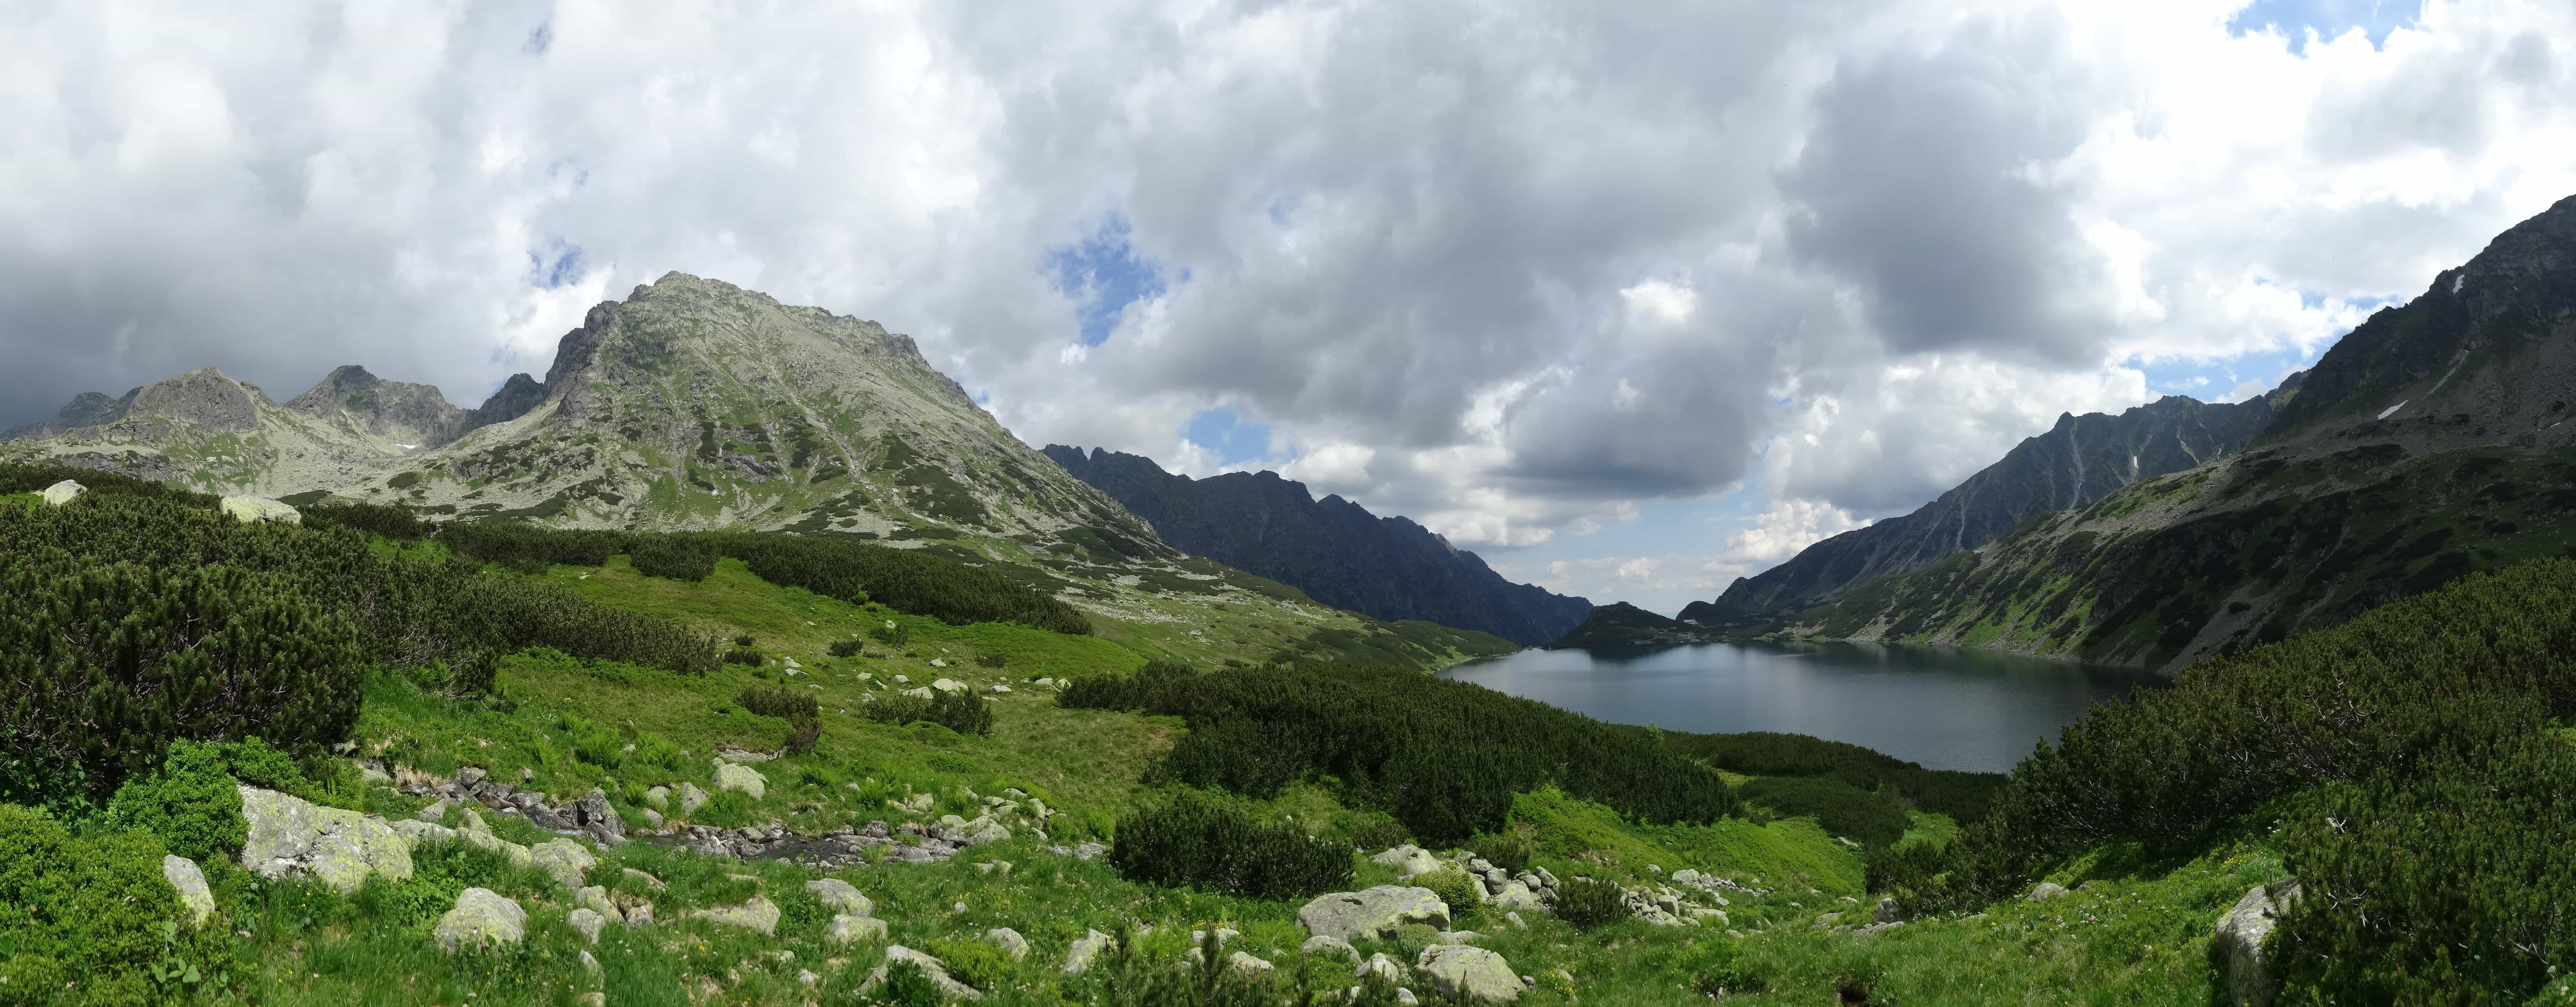 Foto Gratis Montagna Panorama Parco Nazionale Nube Paesaggio Natura Acqua Cielo Lago Valle